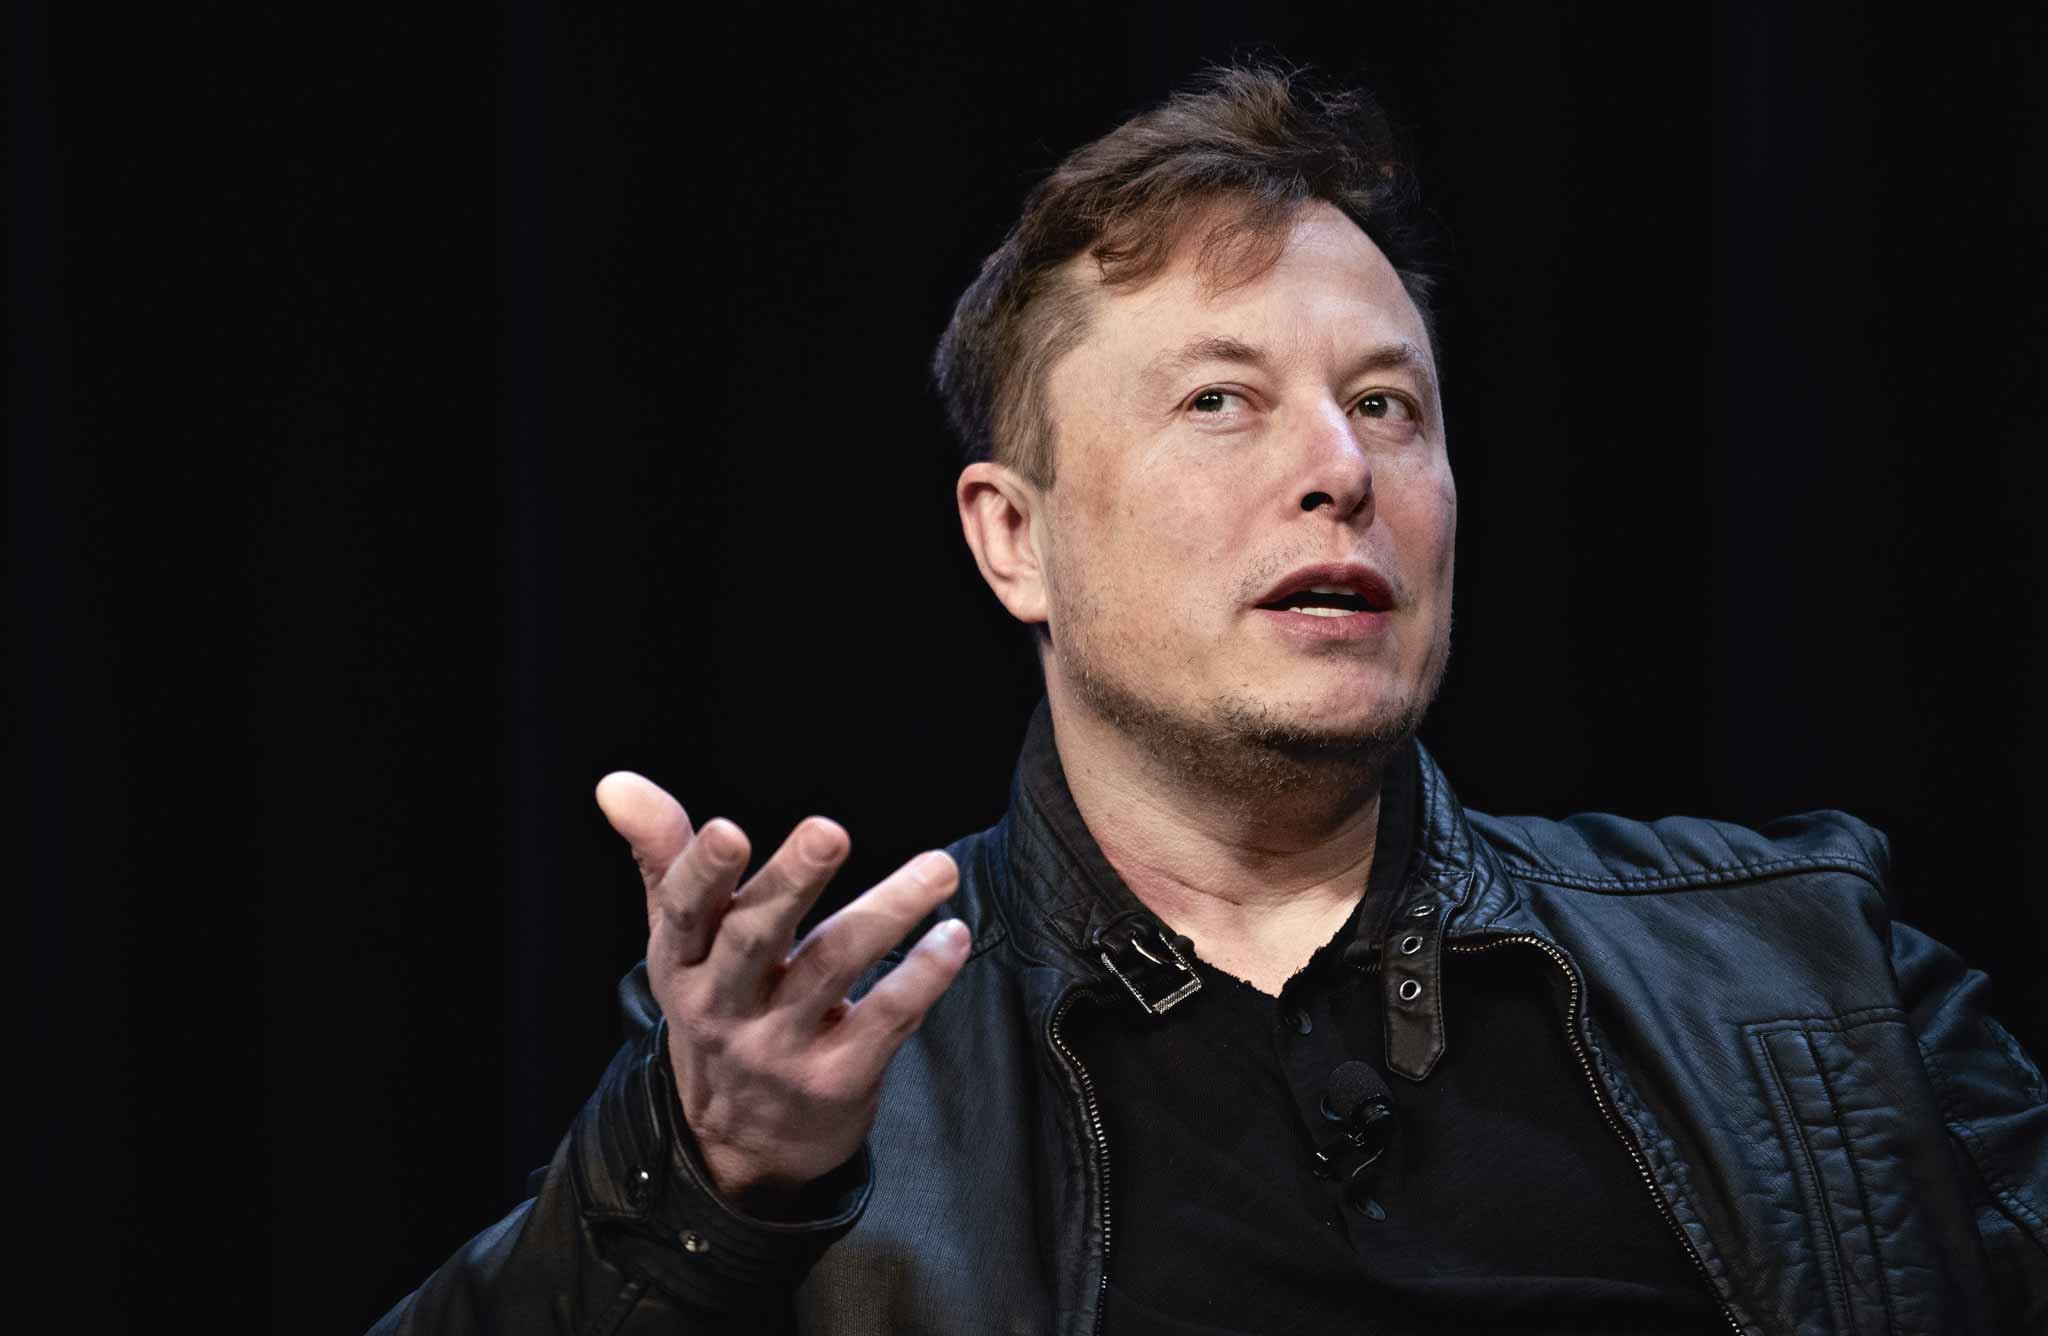 Für seine utopisch erscheinenden Ideen wurde Elon Musk anfangs häufig verlacht. Doch spätestens seit dem Erfolg von Tesla weiß man: Er meint es ernst. Dass aus Plänen wie dem Hyperloop und dem Tunnelsystem der »Boring Company« Realität werden, ist für Musk nur eine Frage der Zeit.